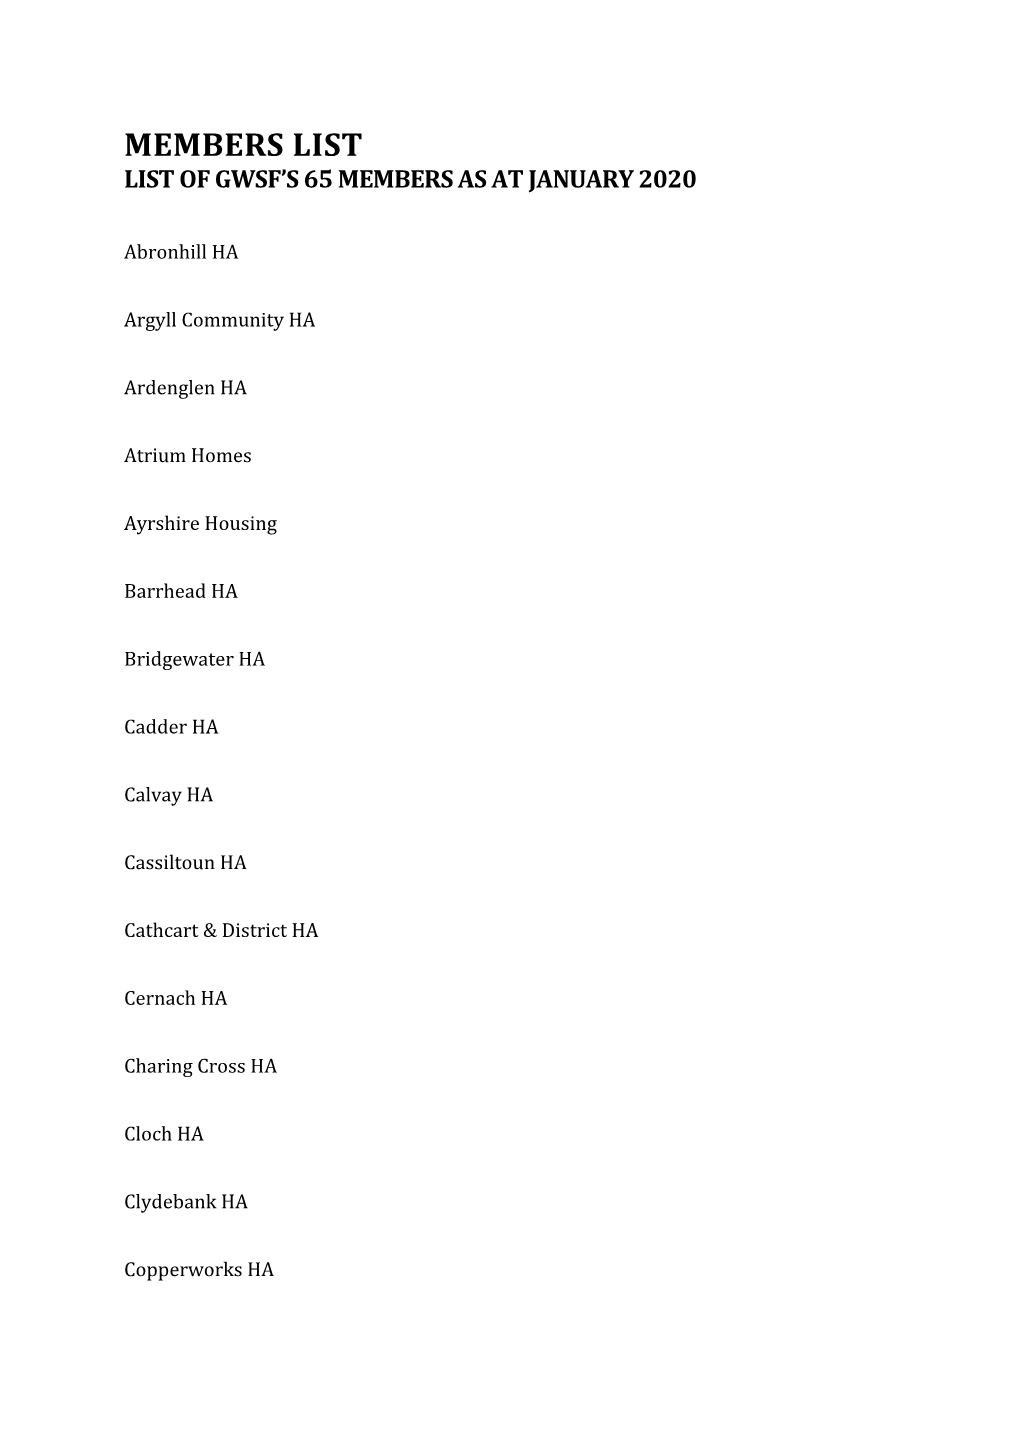 Members List List of Gwsf’S 65 Members As at January 2020